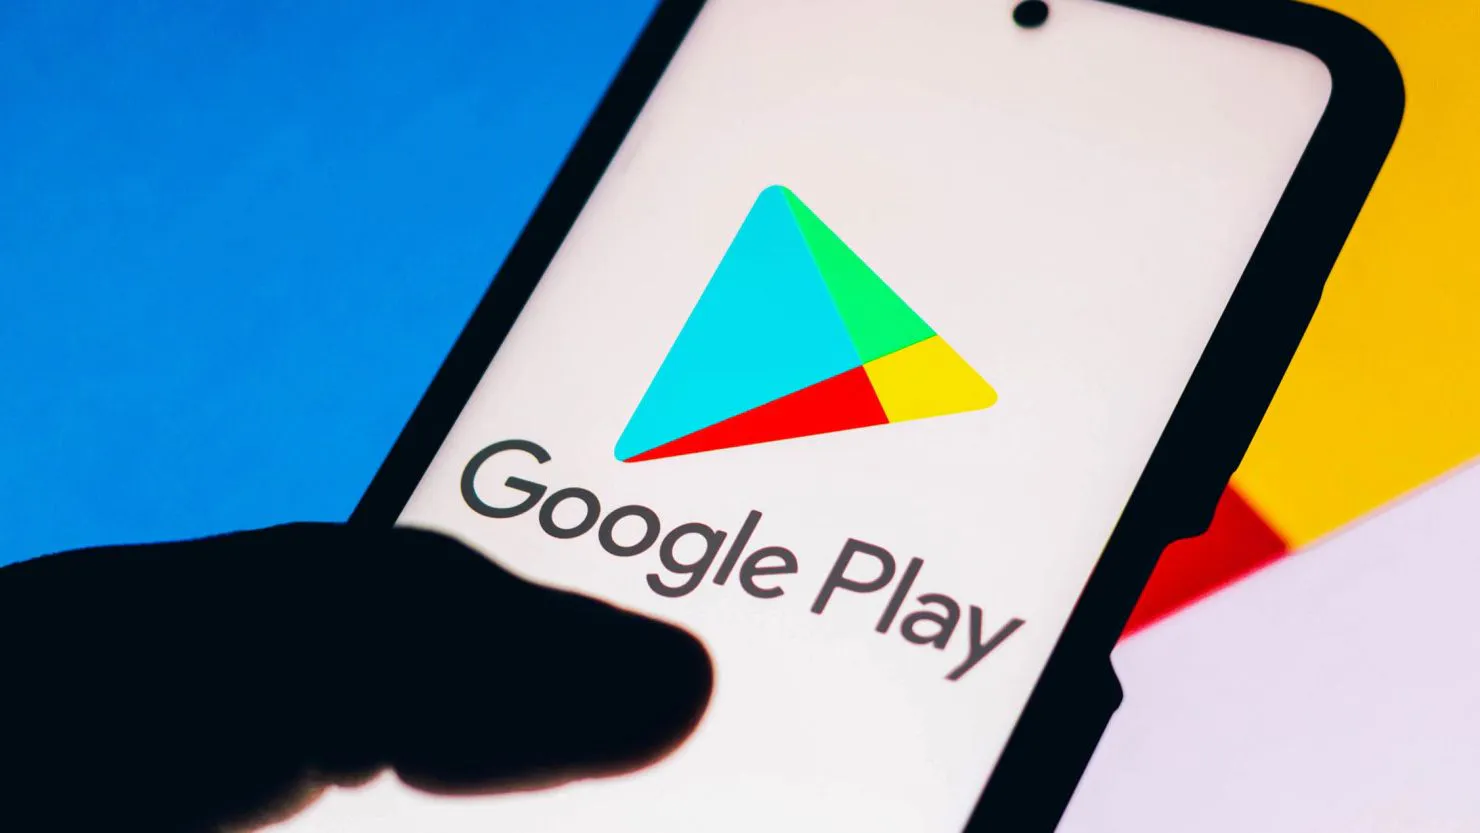 Google ввел возможность пользователям Android удалять дистанционно приложения через Google Play